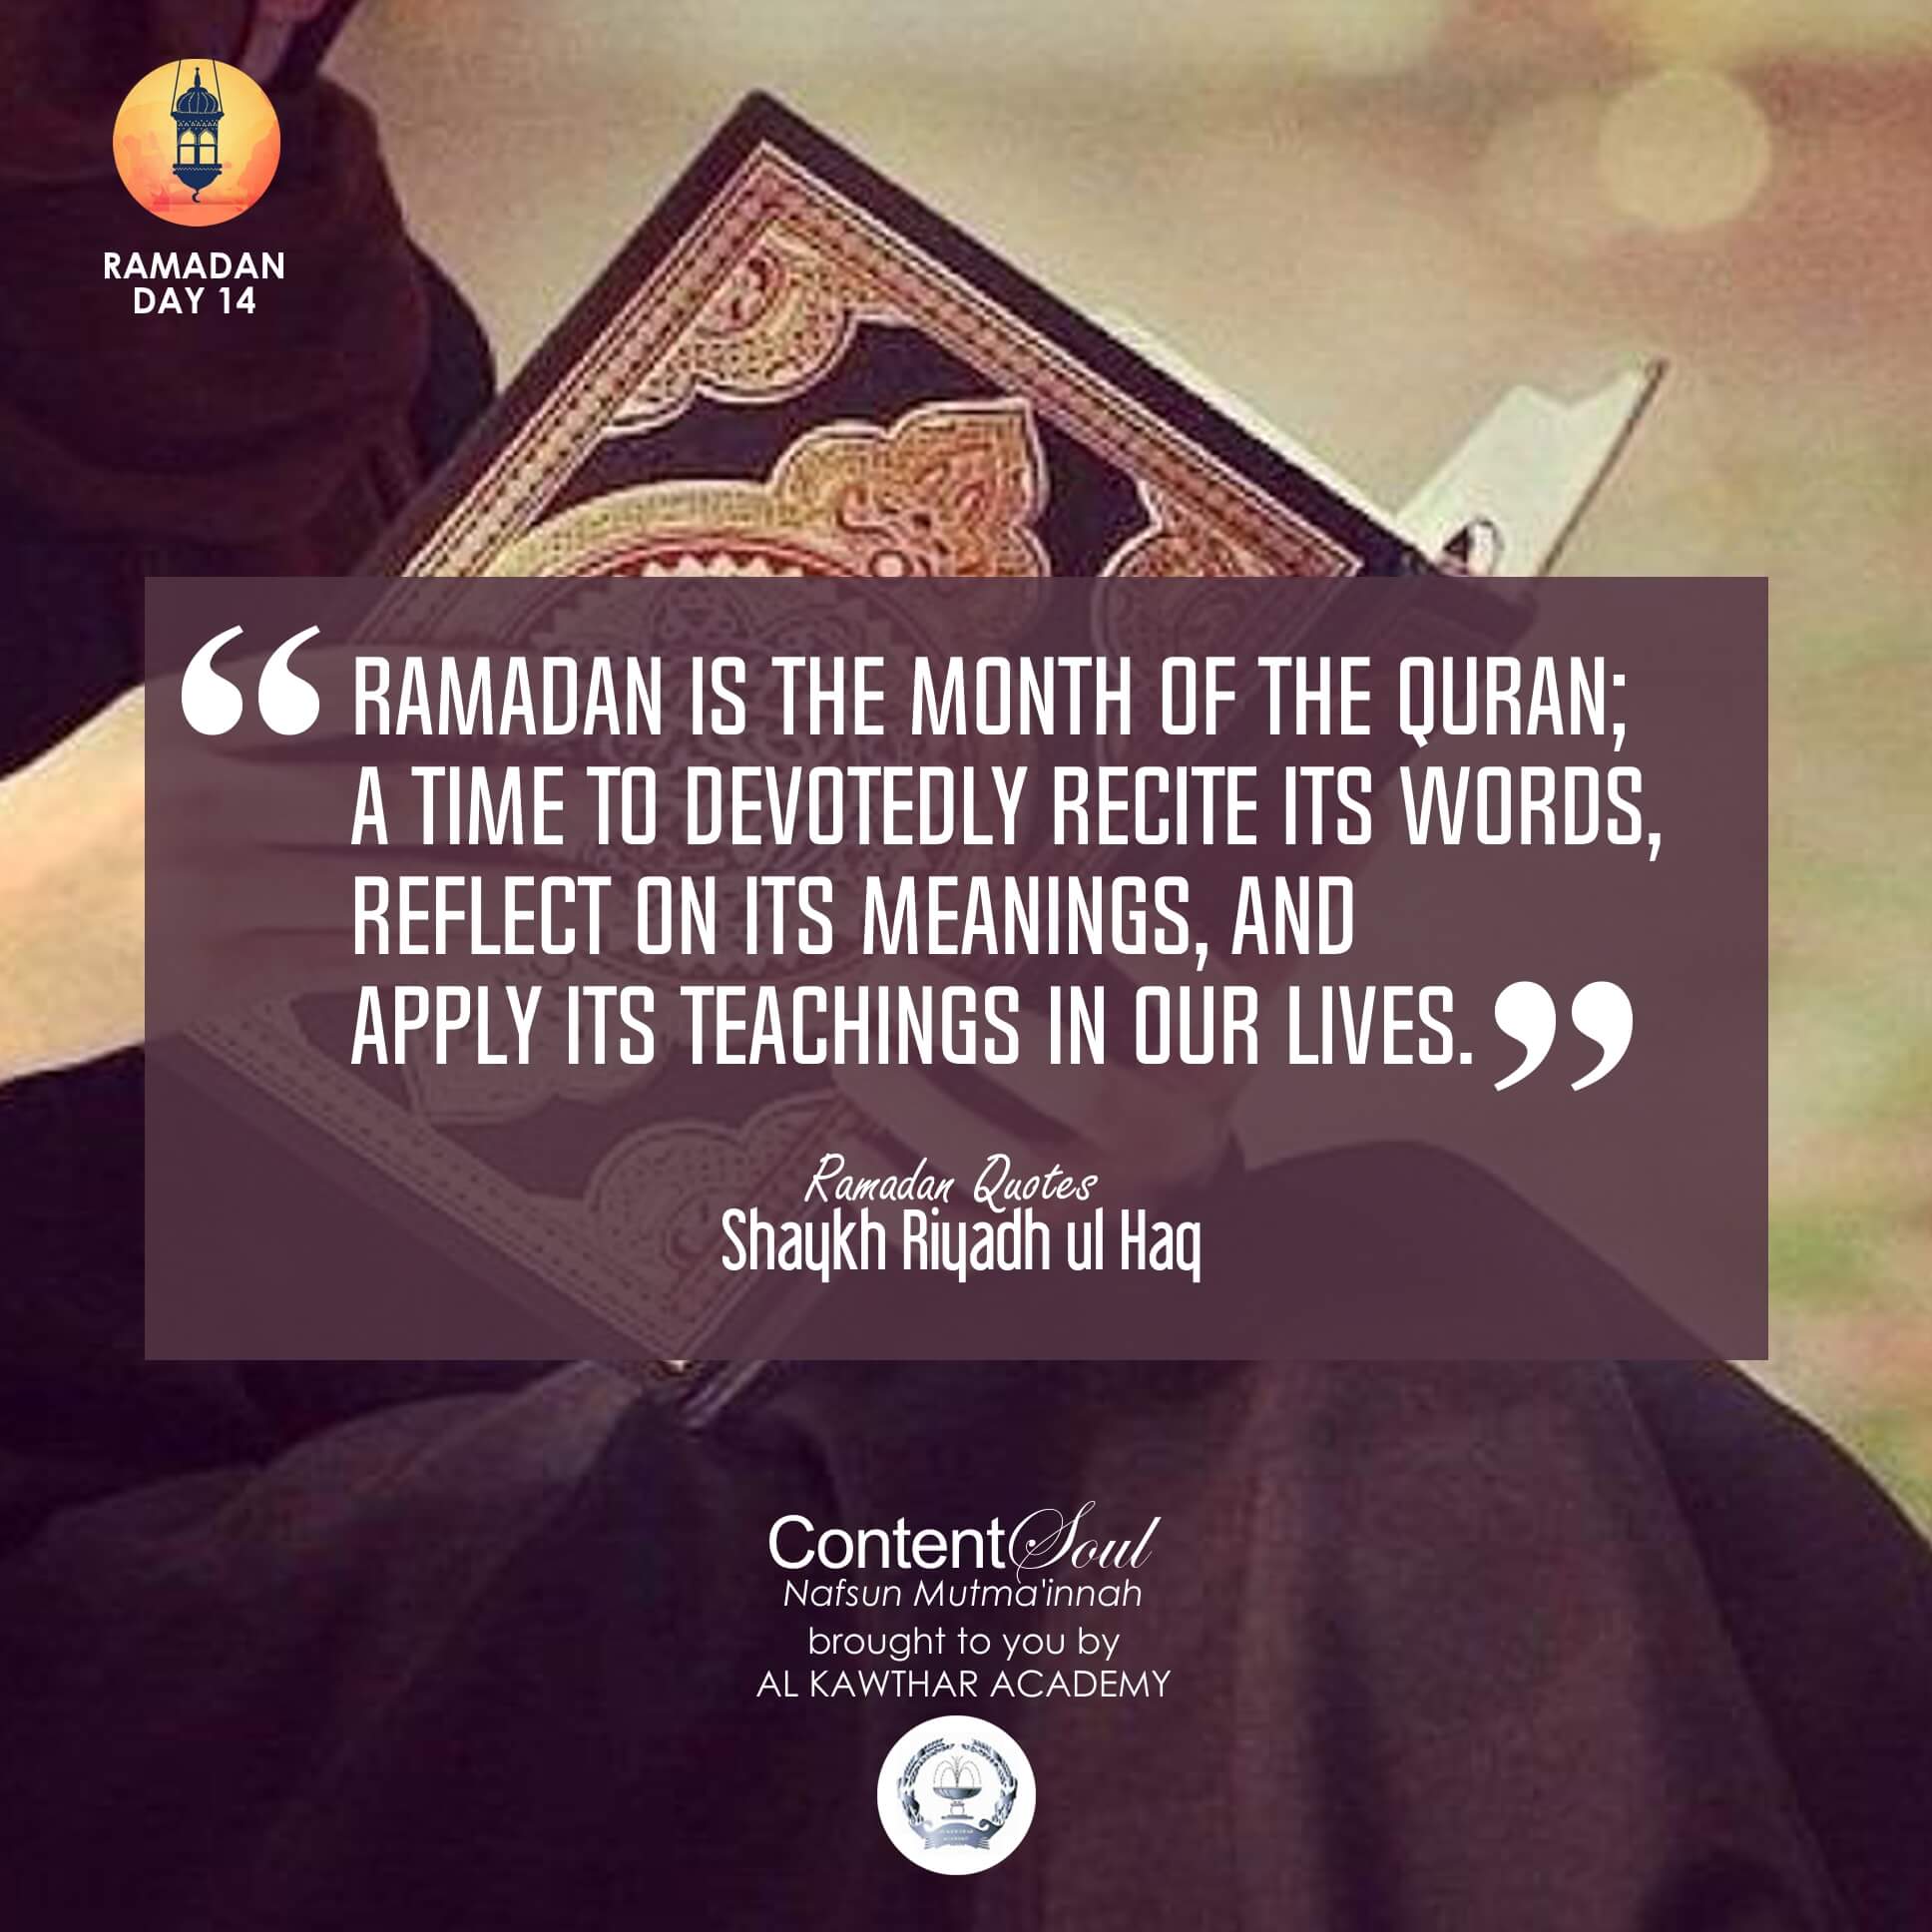 a speech about ramadan